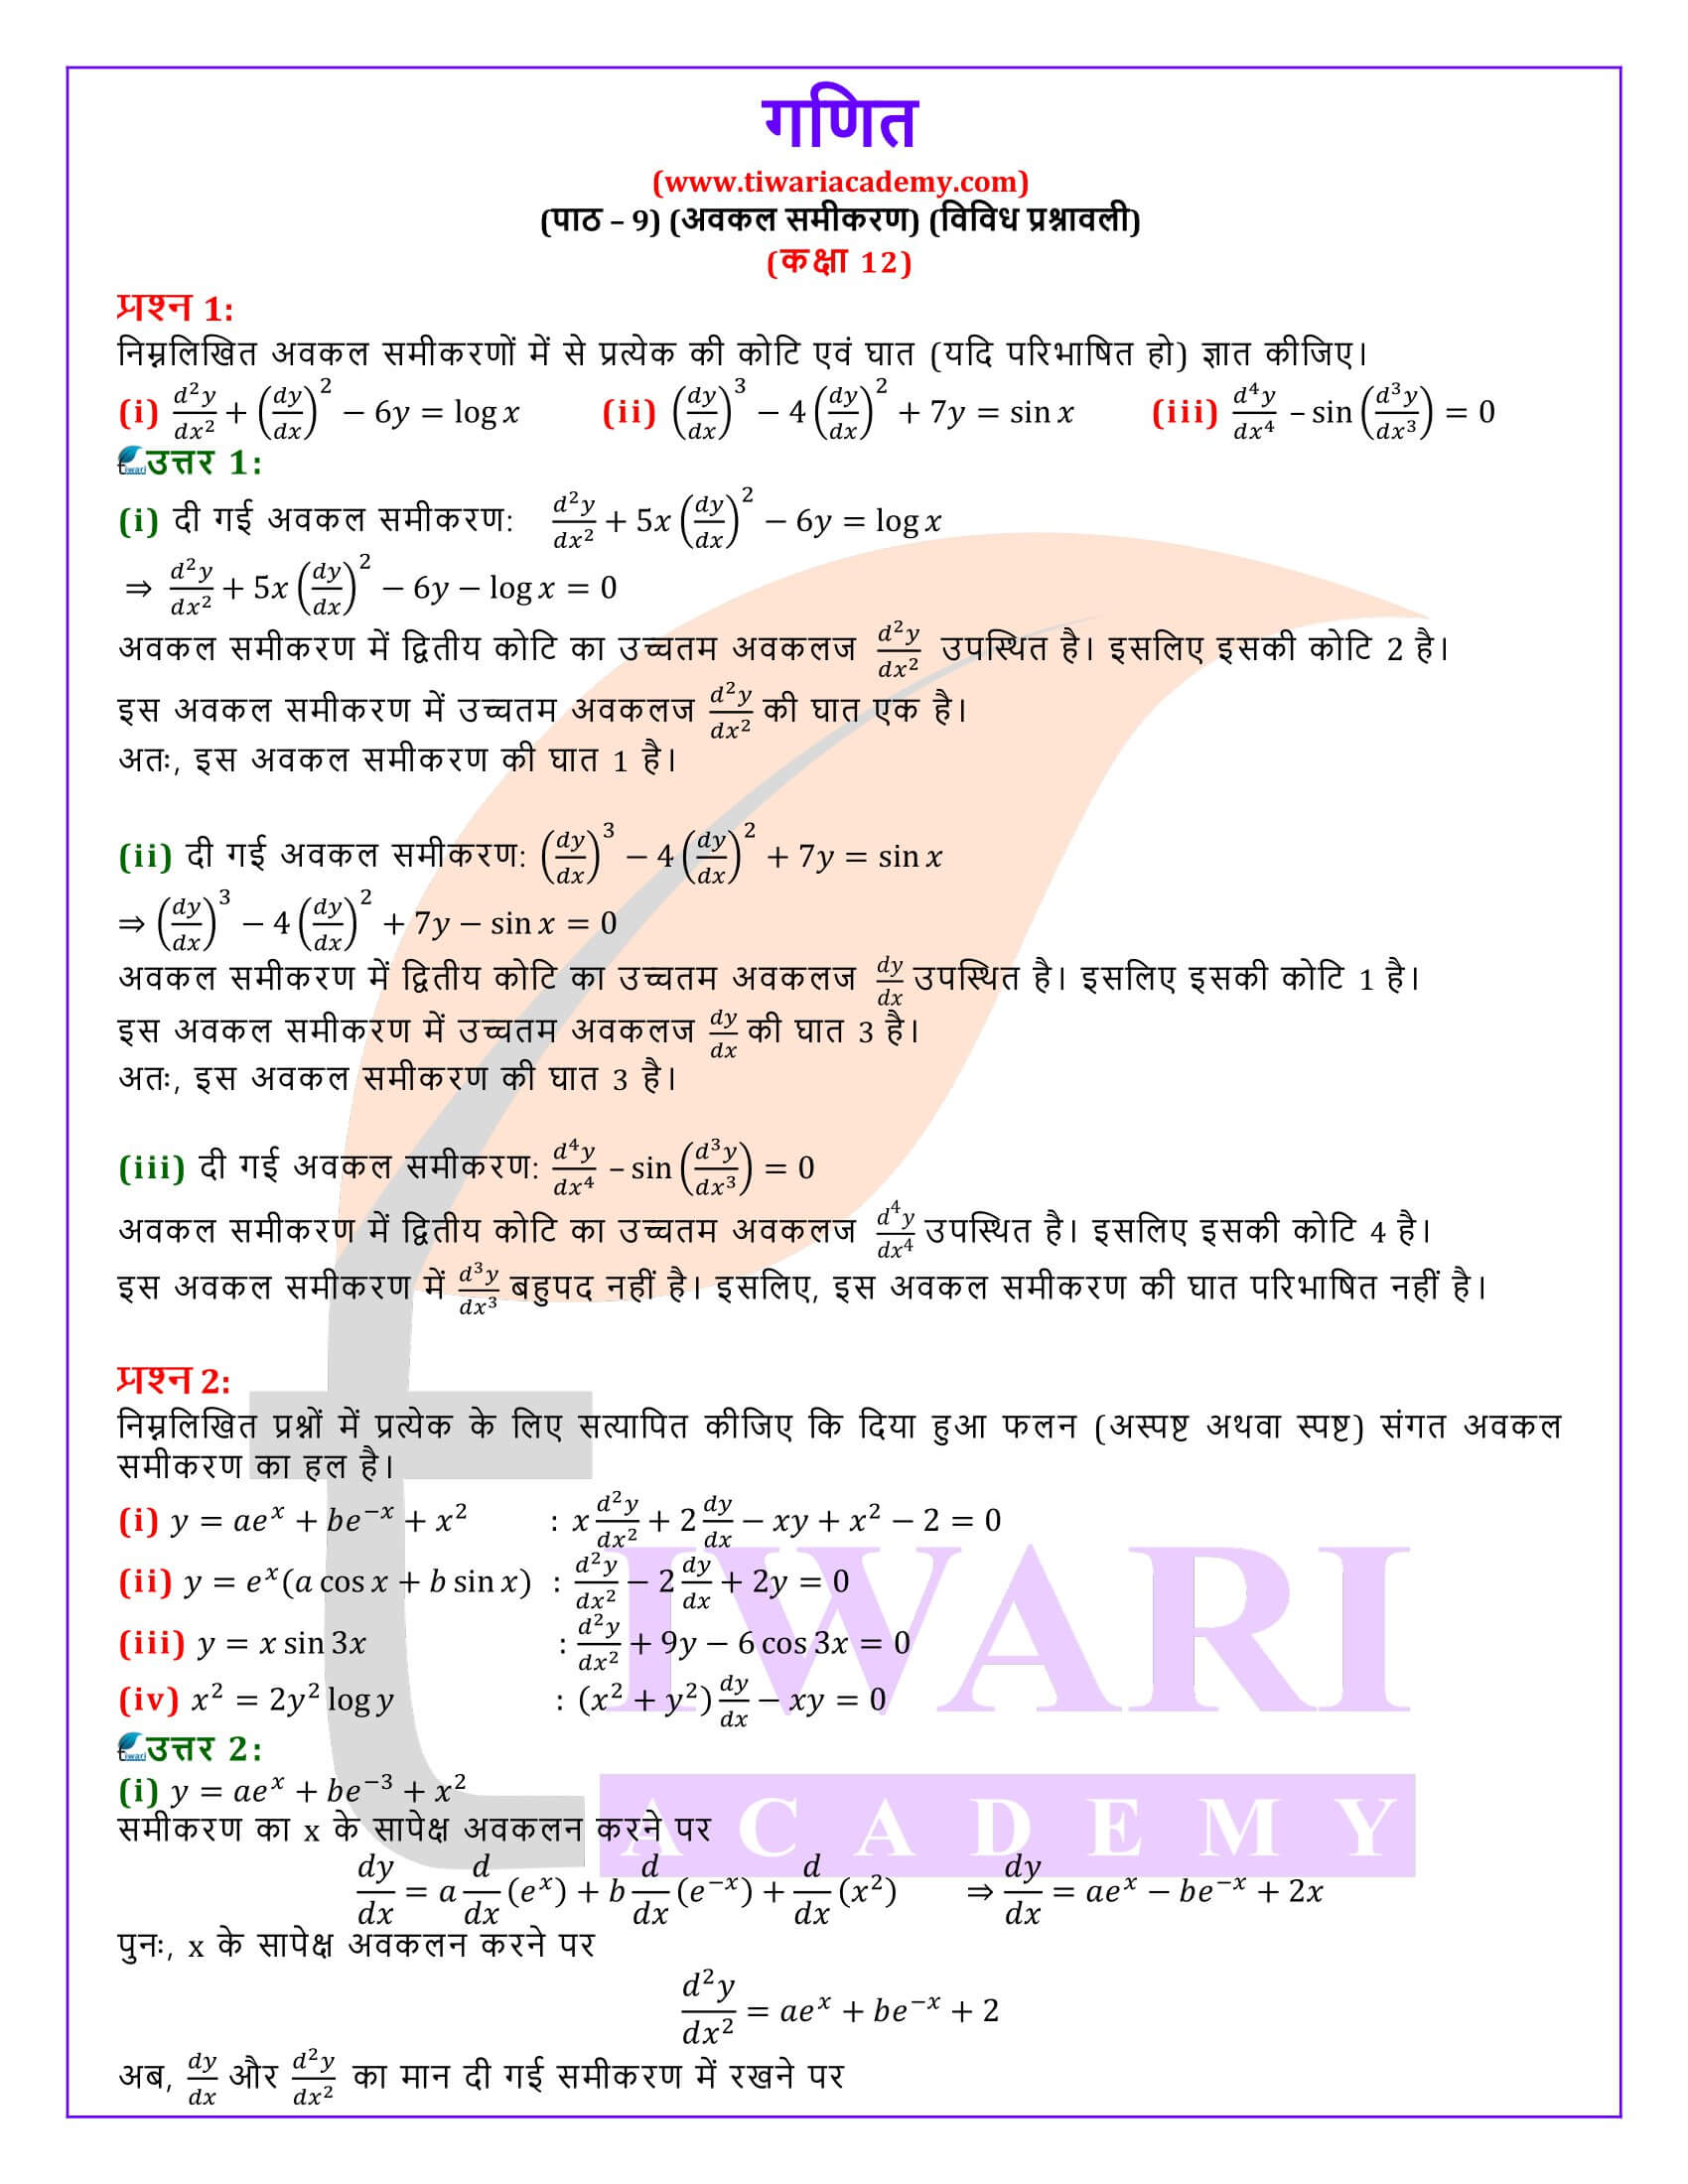 कक्षा 12 गणित अध्याय 9 विविध प्रश्नावली के समाधान